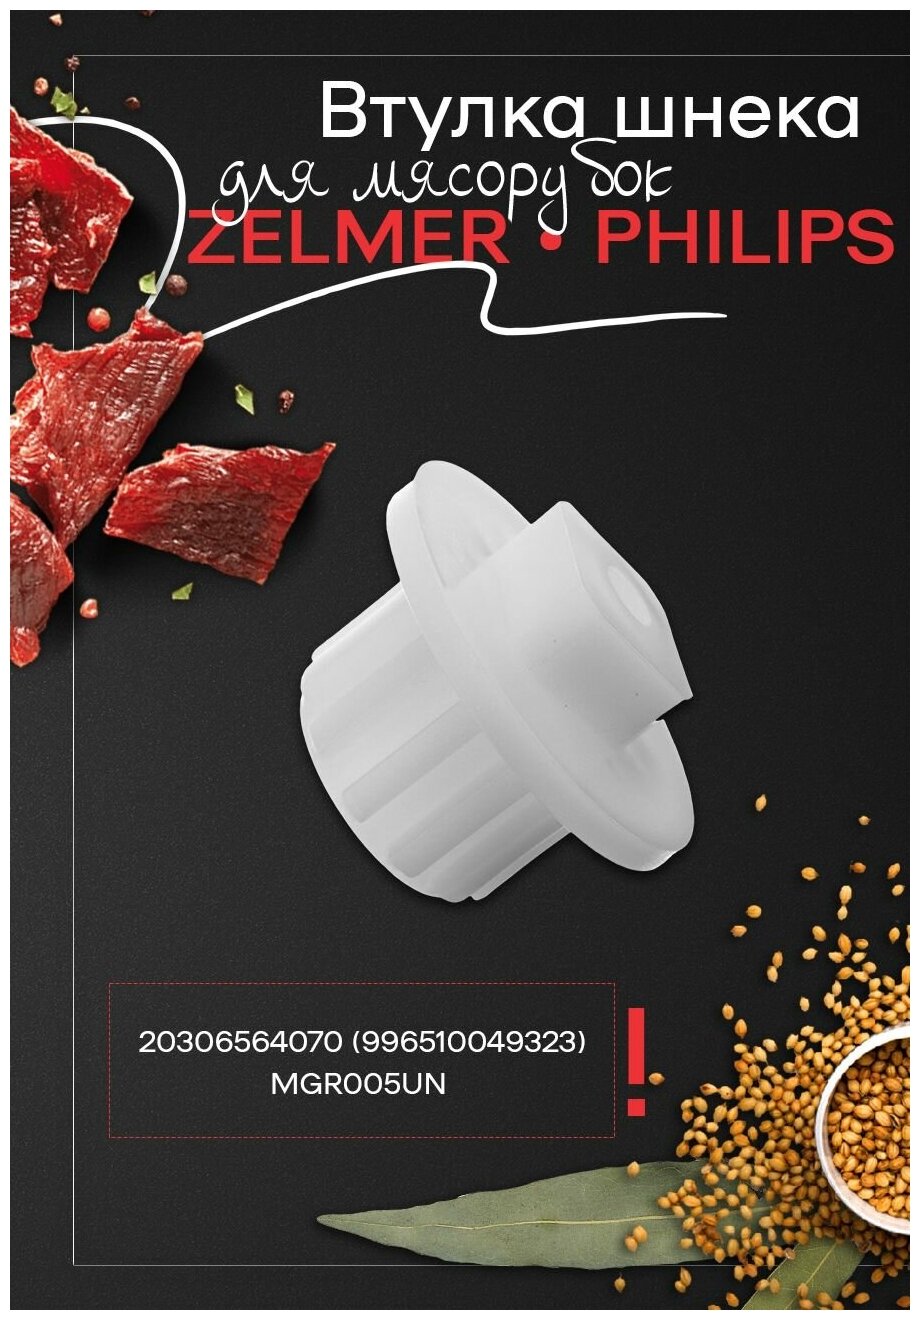 Втулка шнека для мясорубки Philips, Zelmer 354534